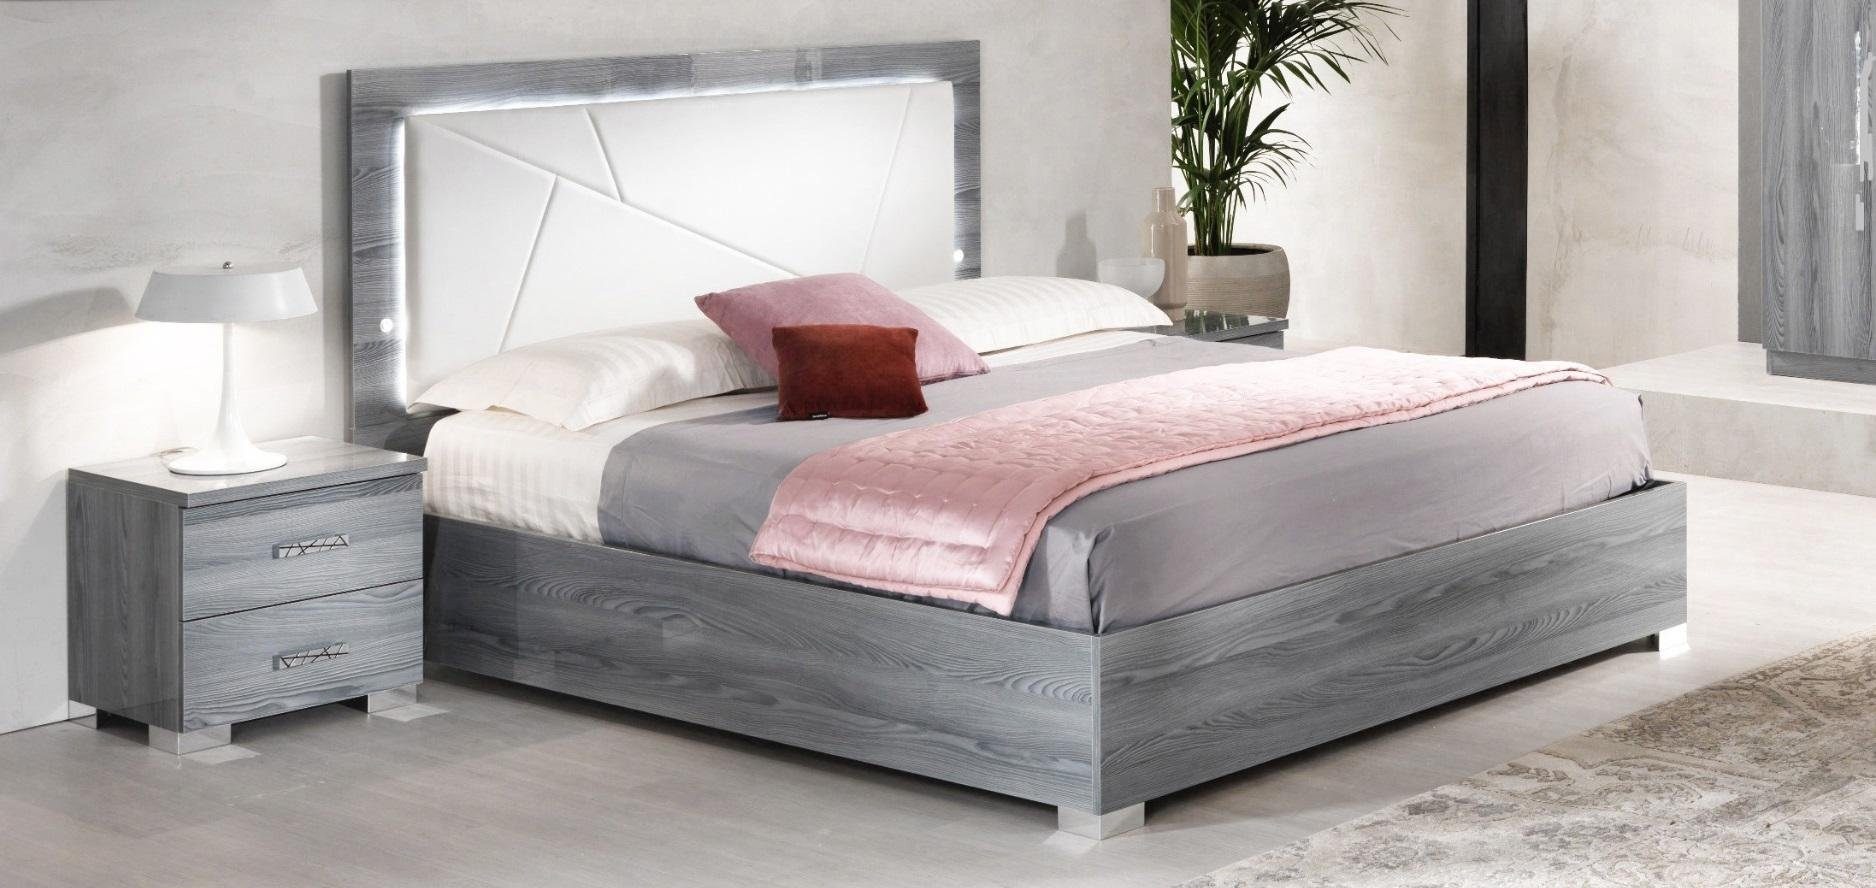 JVmoebel Schlafzimmer-Set »3tlg. Italienische Möbel Luxus Schlafzimmer Set  Bett 2x Nachttische« online kaufen | OTTO